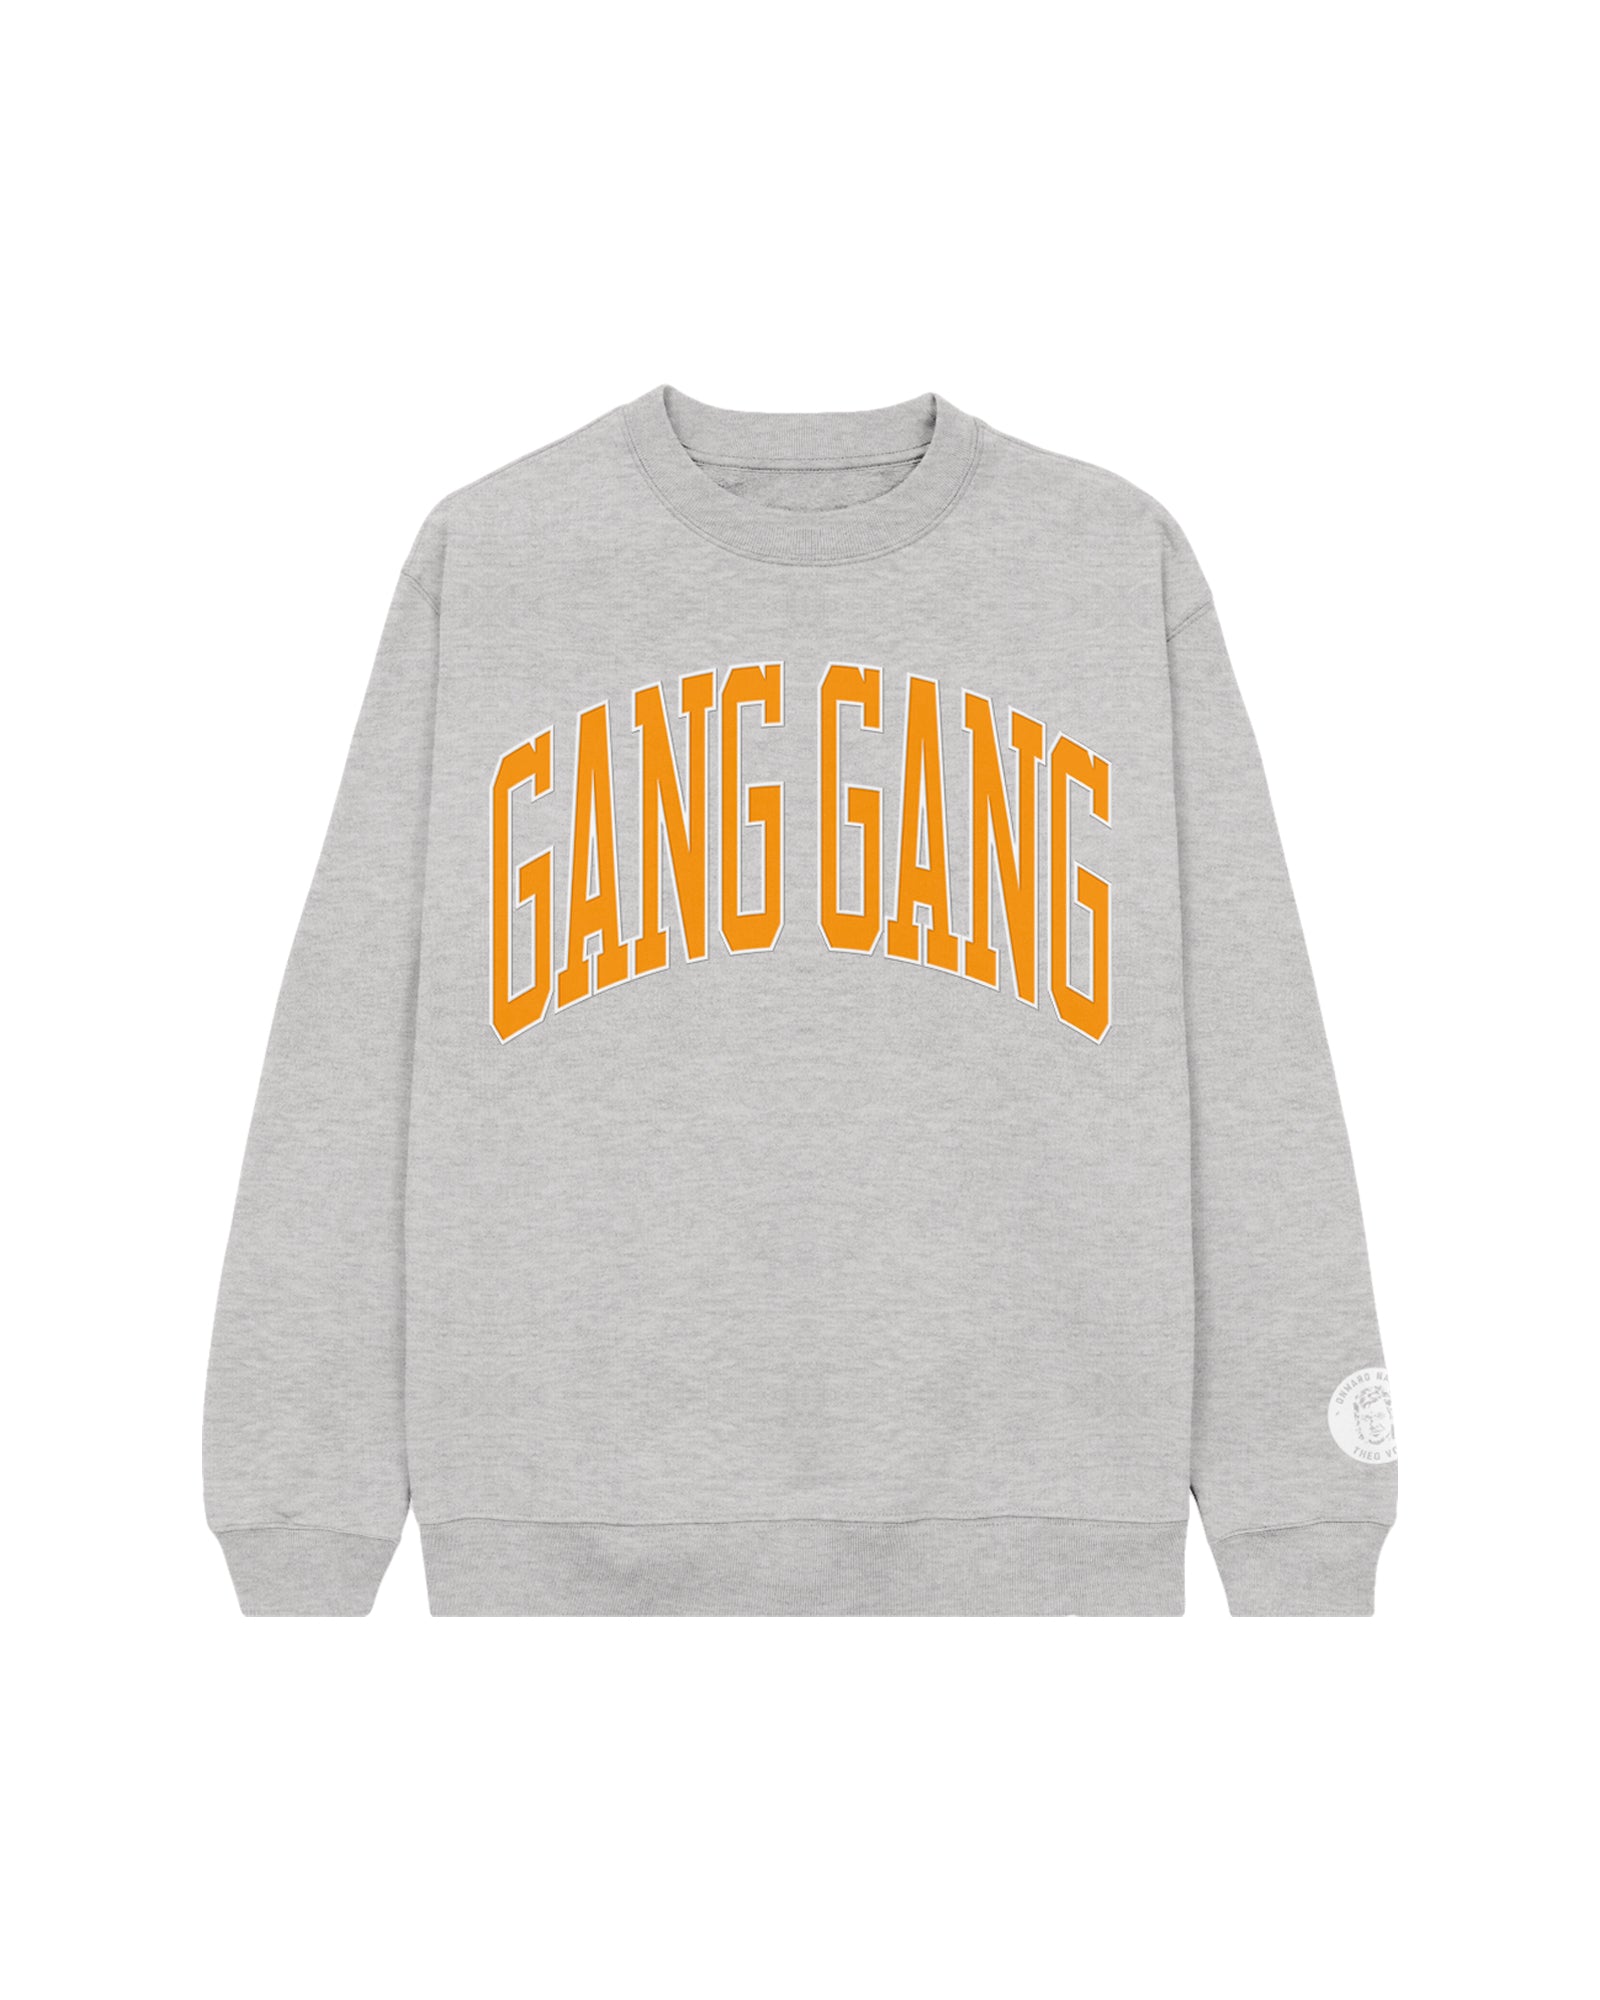 Gang Gang Crewneck